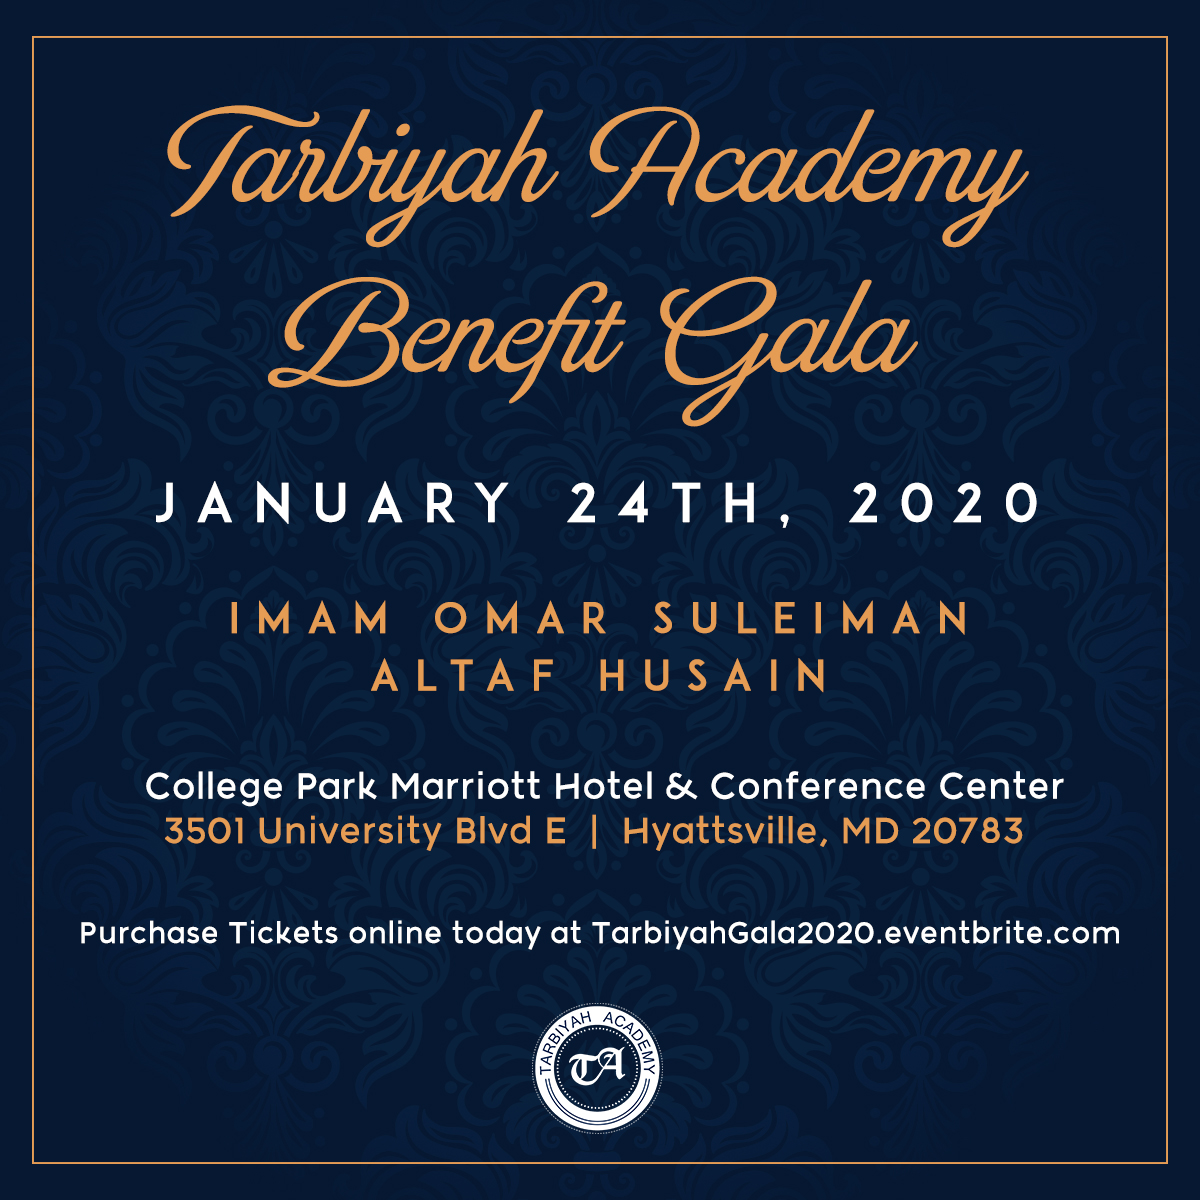 Tarbiyah Academy Benefit Gala